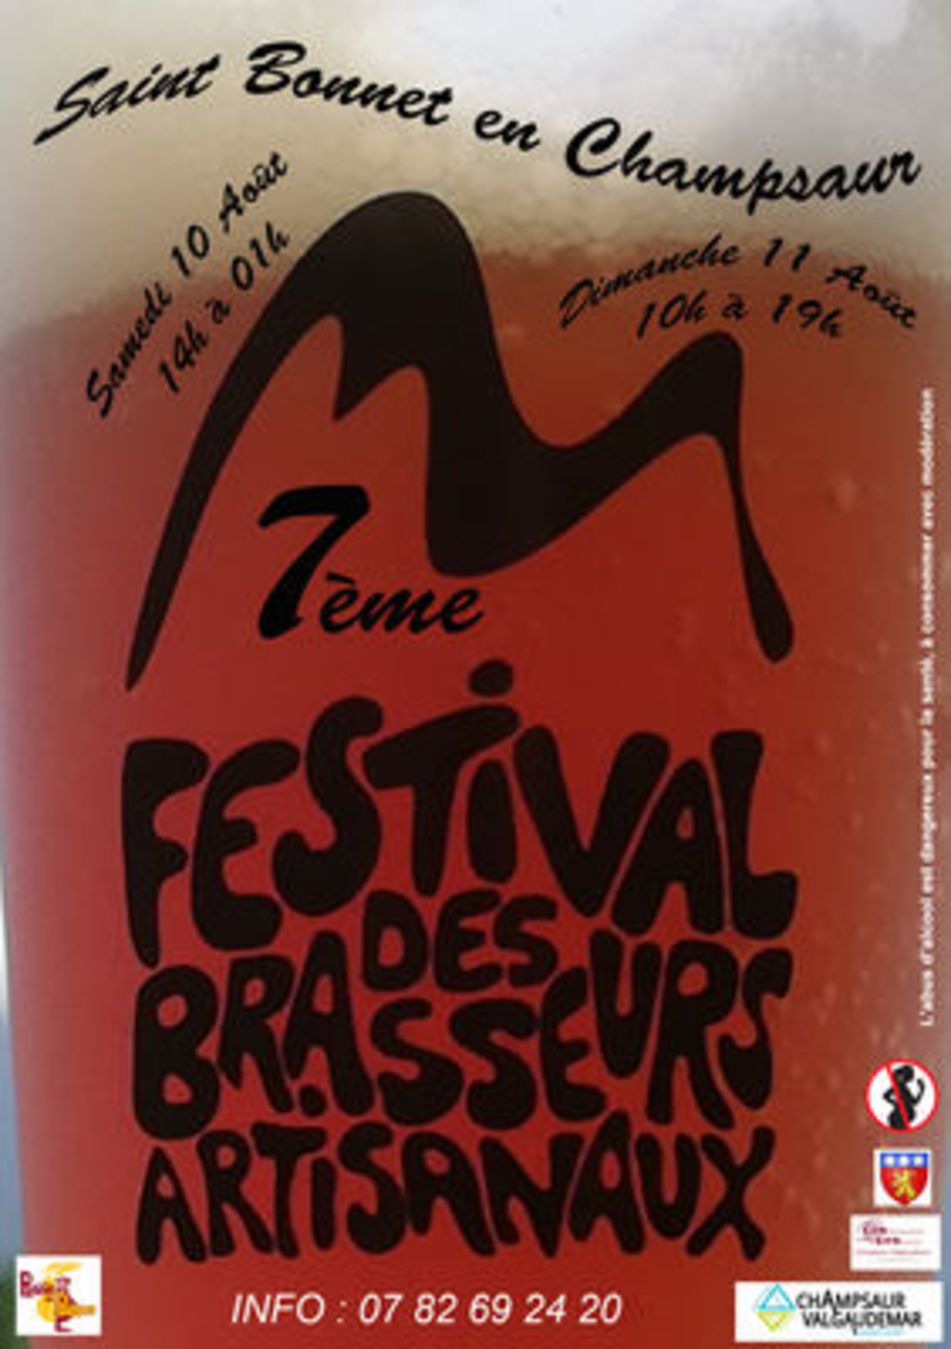 7ème festival des brasseurs à Saint-Bonnet-en-Champsaur